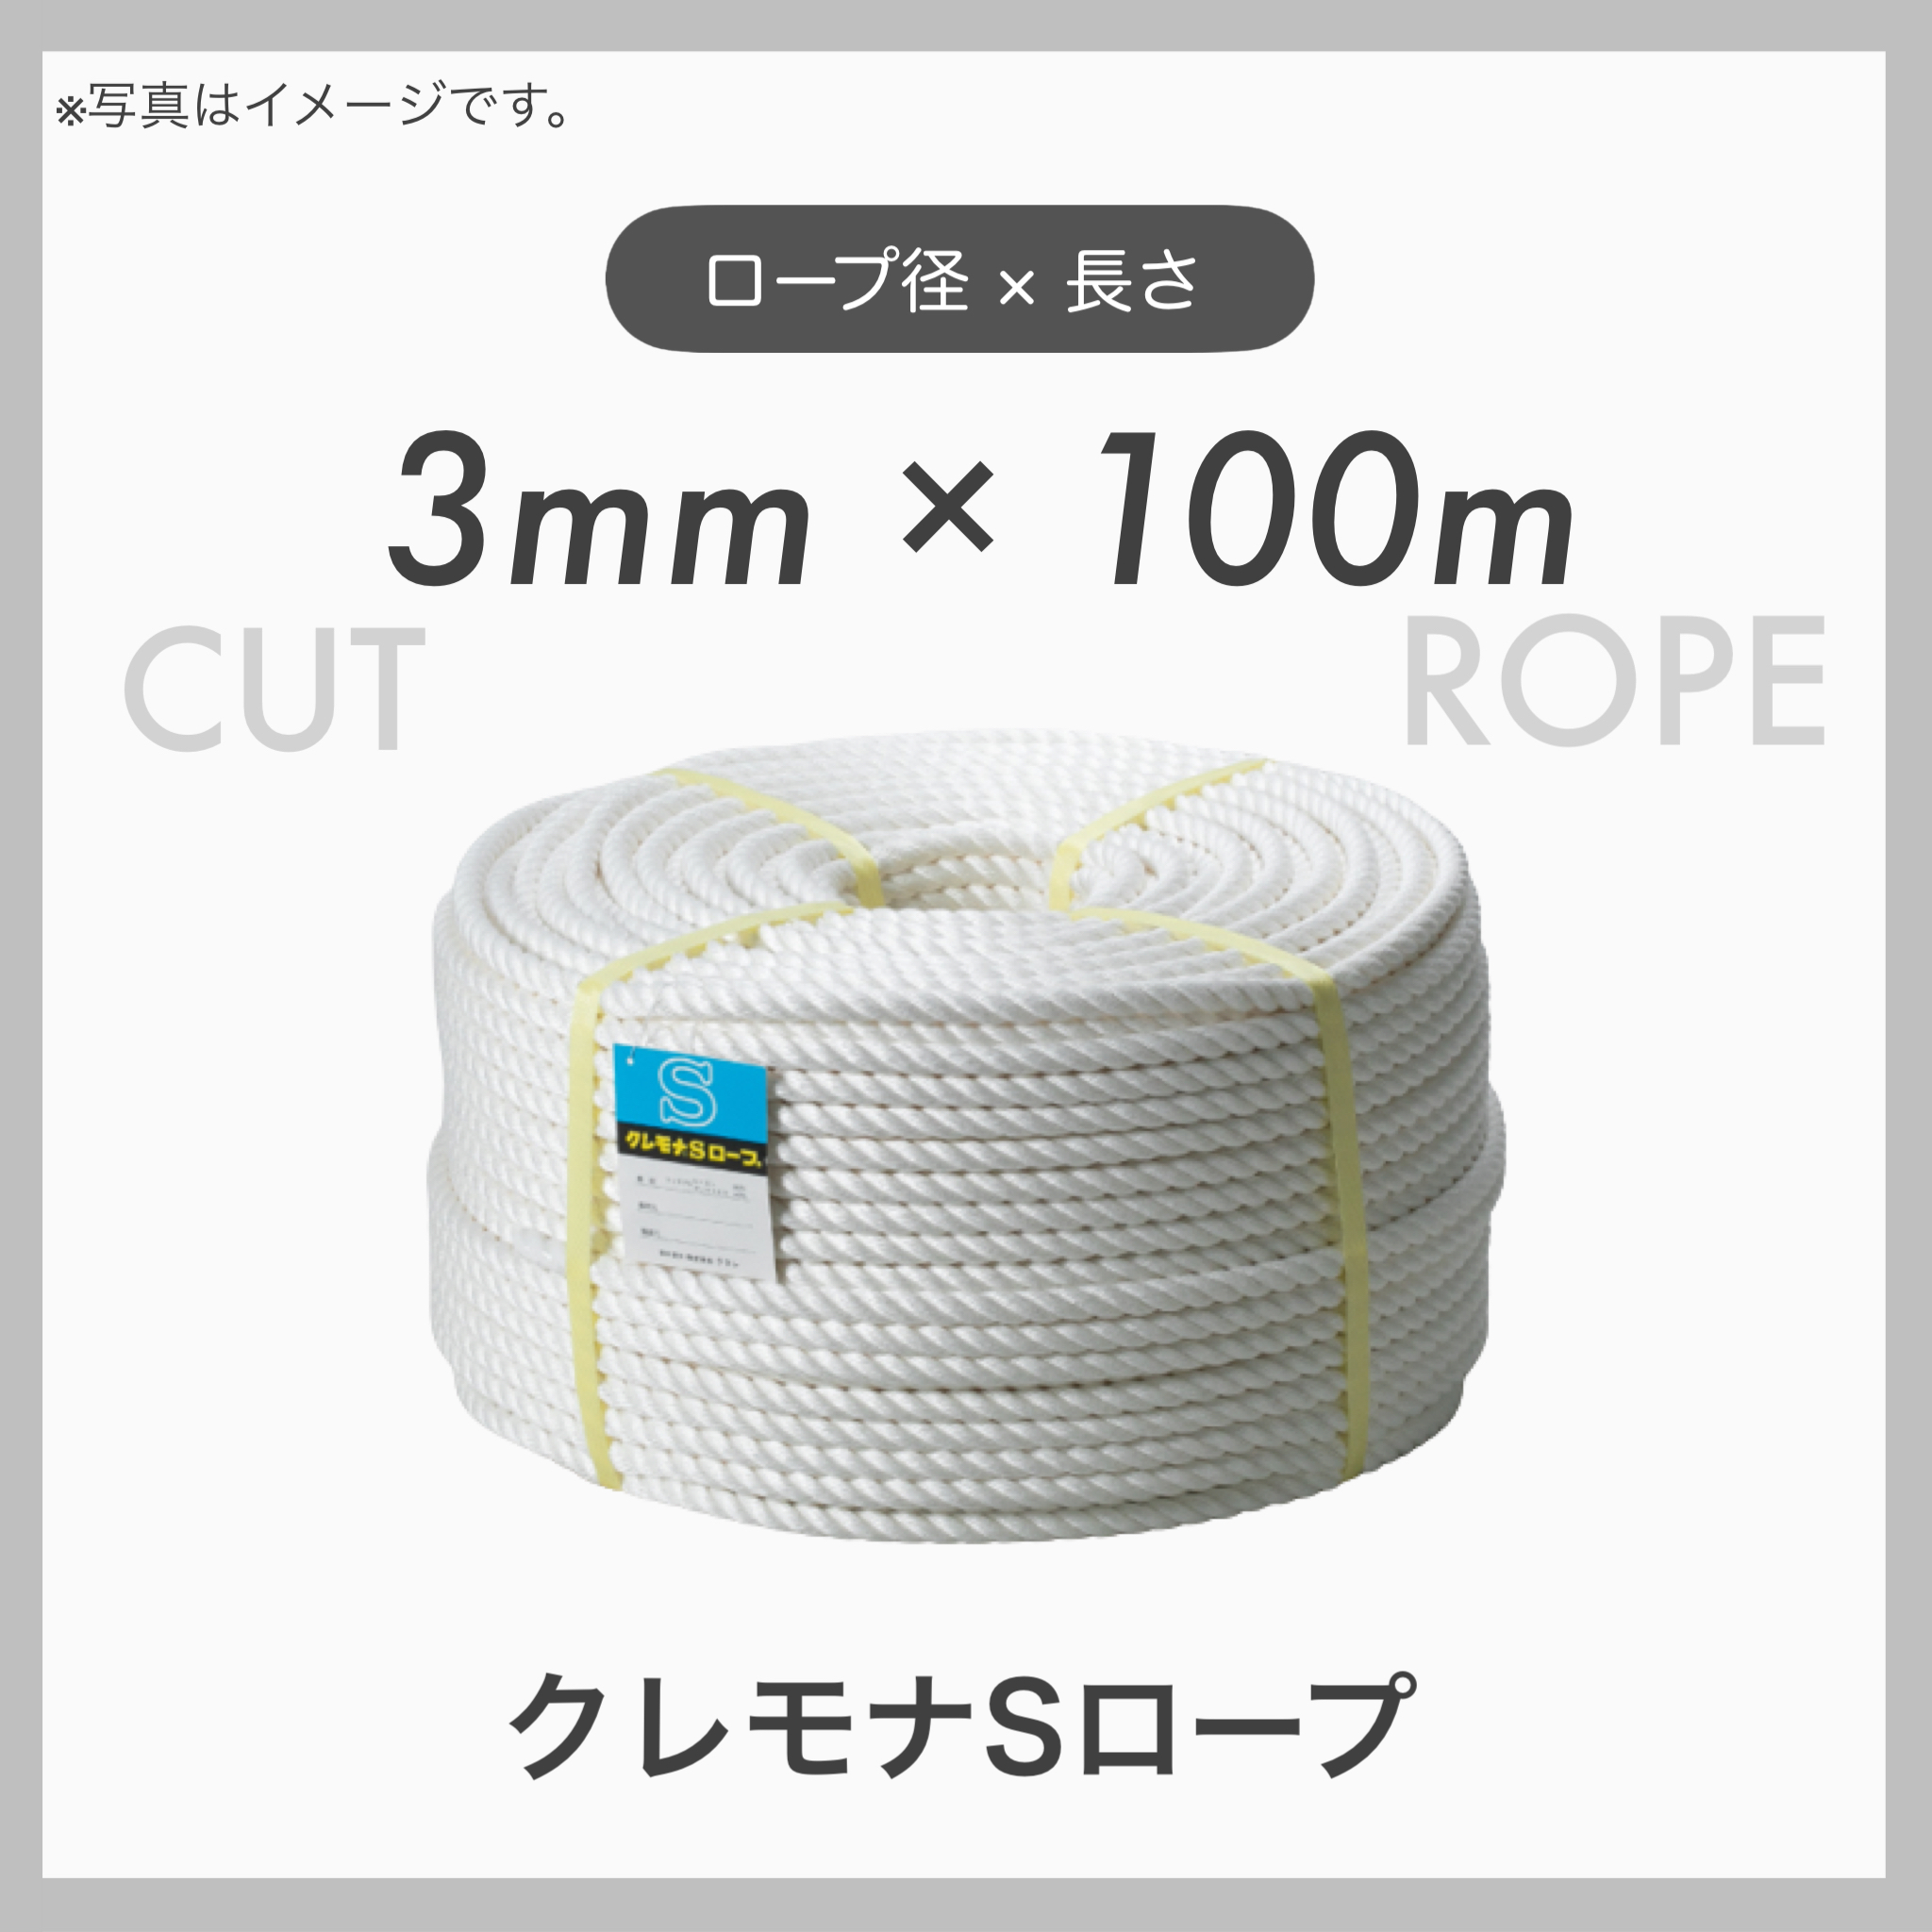 クレモナロープ クレモナSロープ 繊維ロープ 合繊ロープ 3mm×100m 直径3mm 長さ100m トラック用品